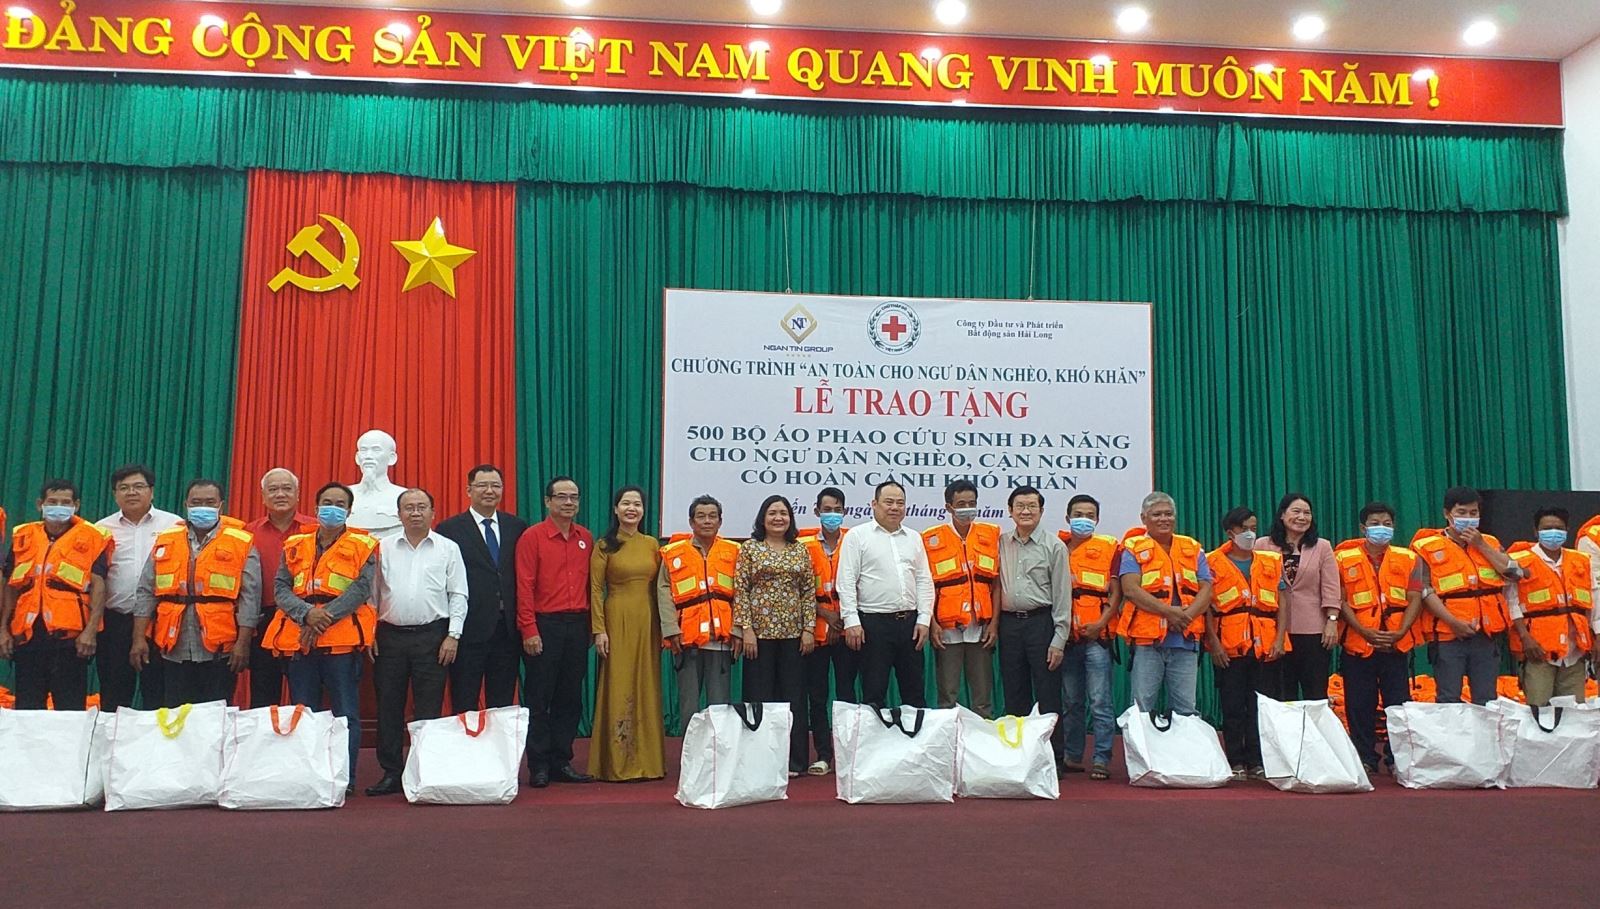 Nguyên Chủ tịch nước Trương Tấn Sang trao tặng 500 bộ áo phao cứu sinh đa năng tại tỉnh Bến Tre”